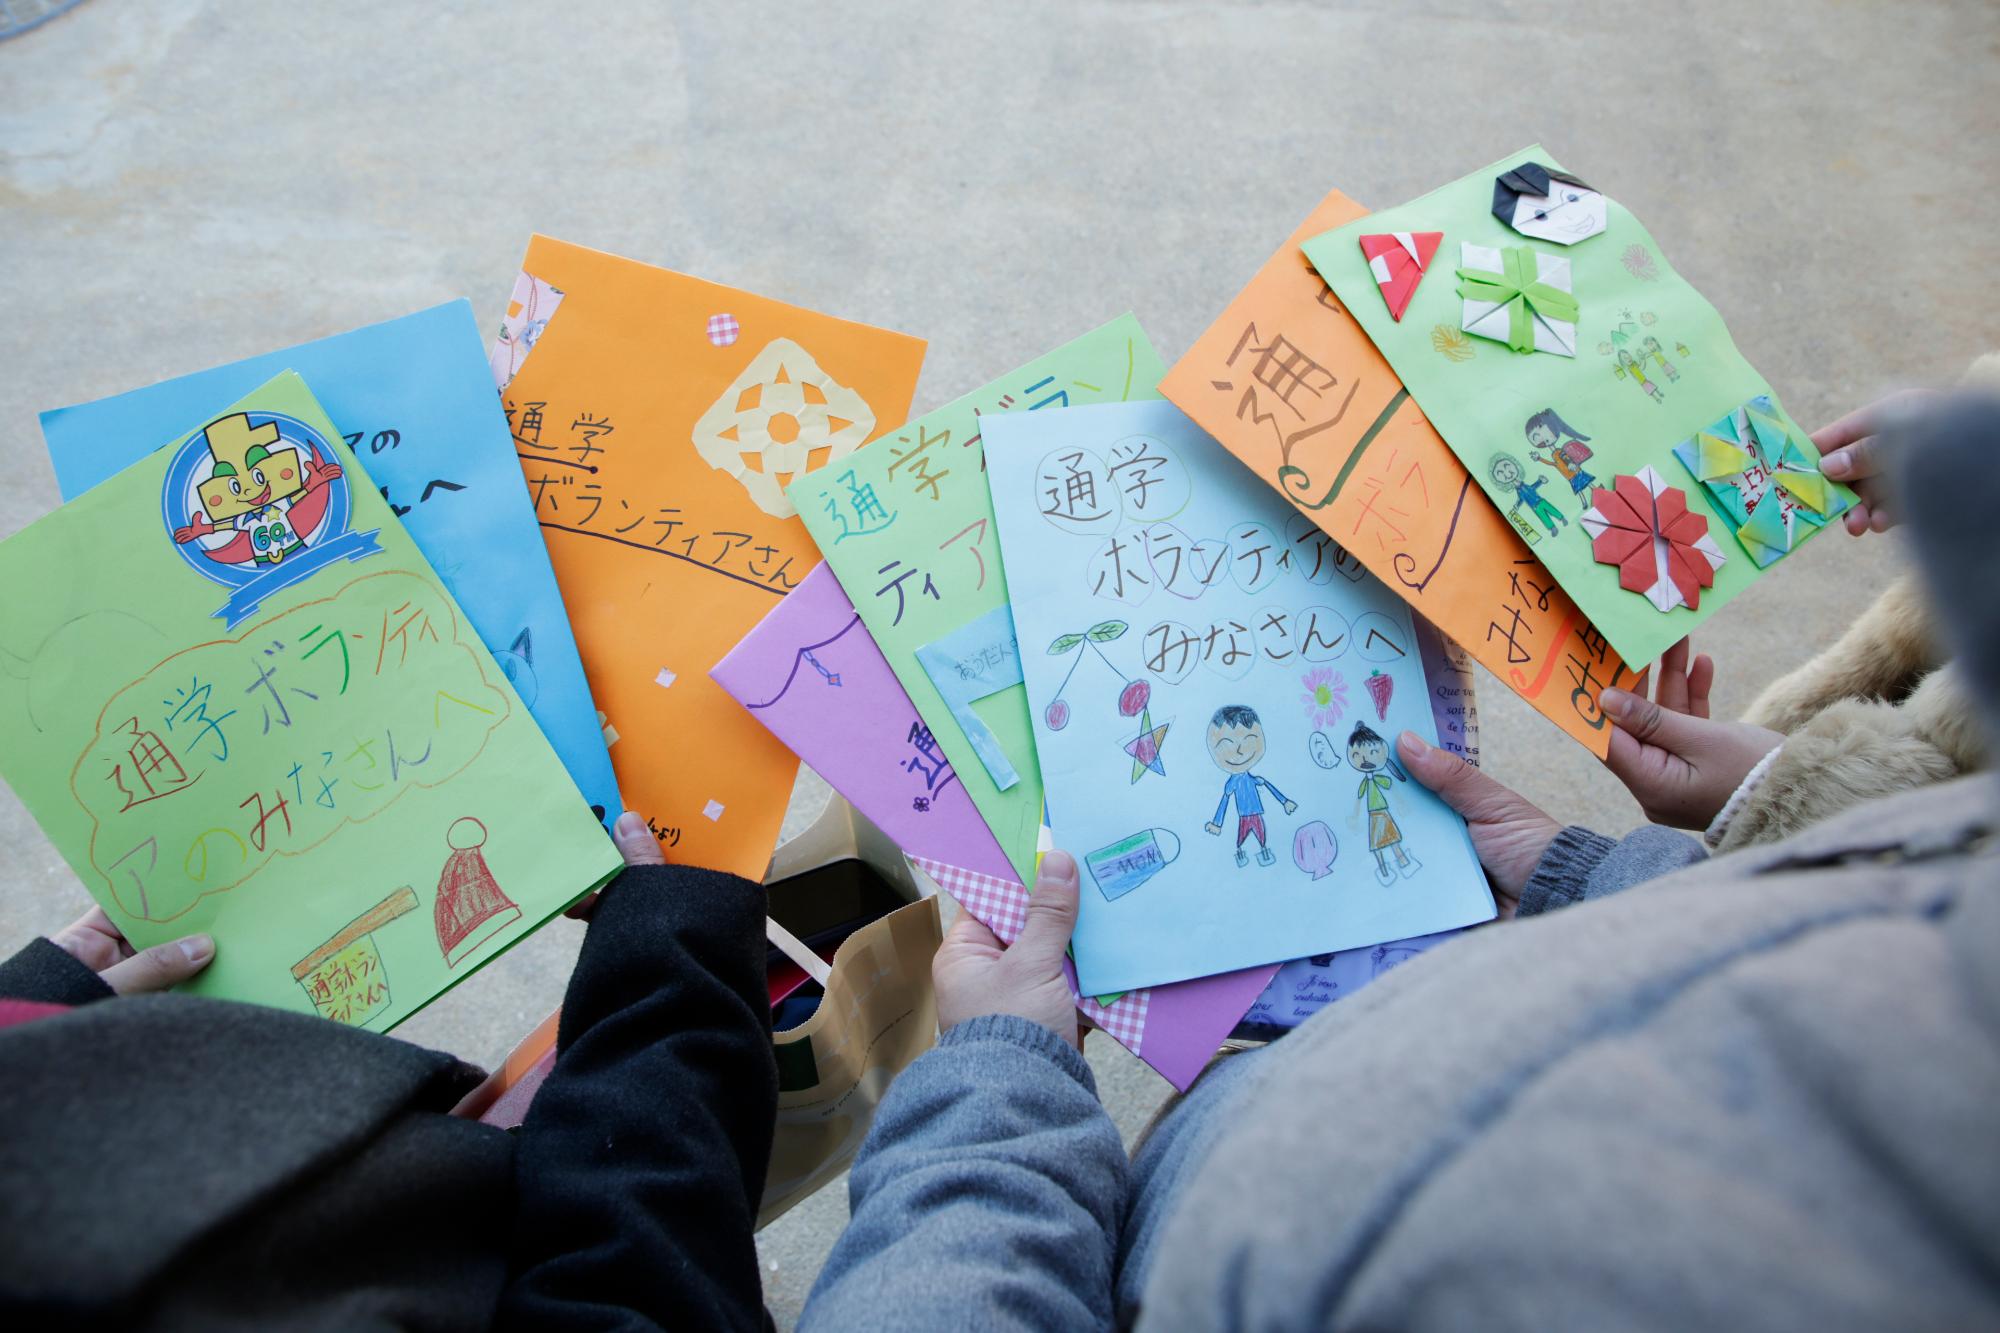 児童から通学ボランティアをした大学生へ向けて贈られた文集が写った写真。文集の紙は色とりどりで、クレヨンや色鉛筆で絵が描かれたり、折り紙が貼られているものもある。